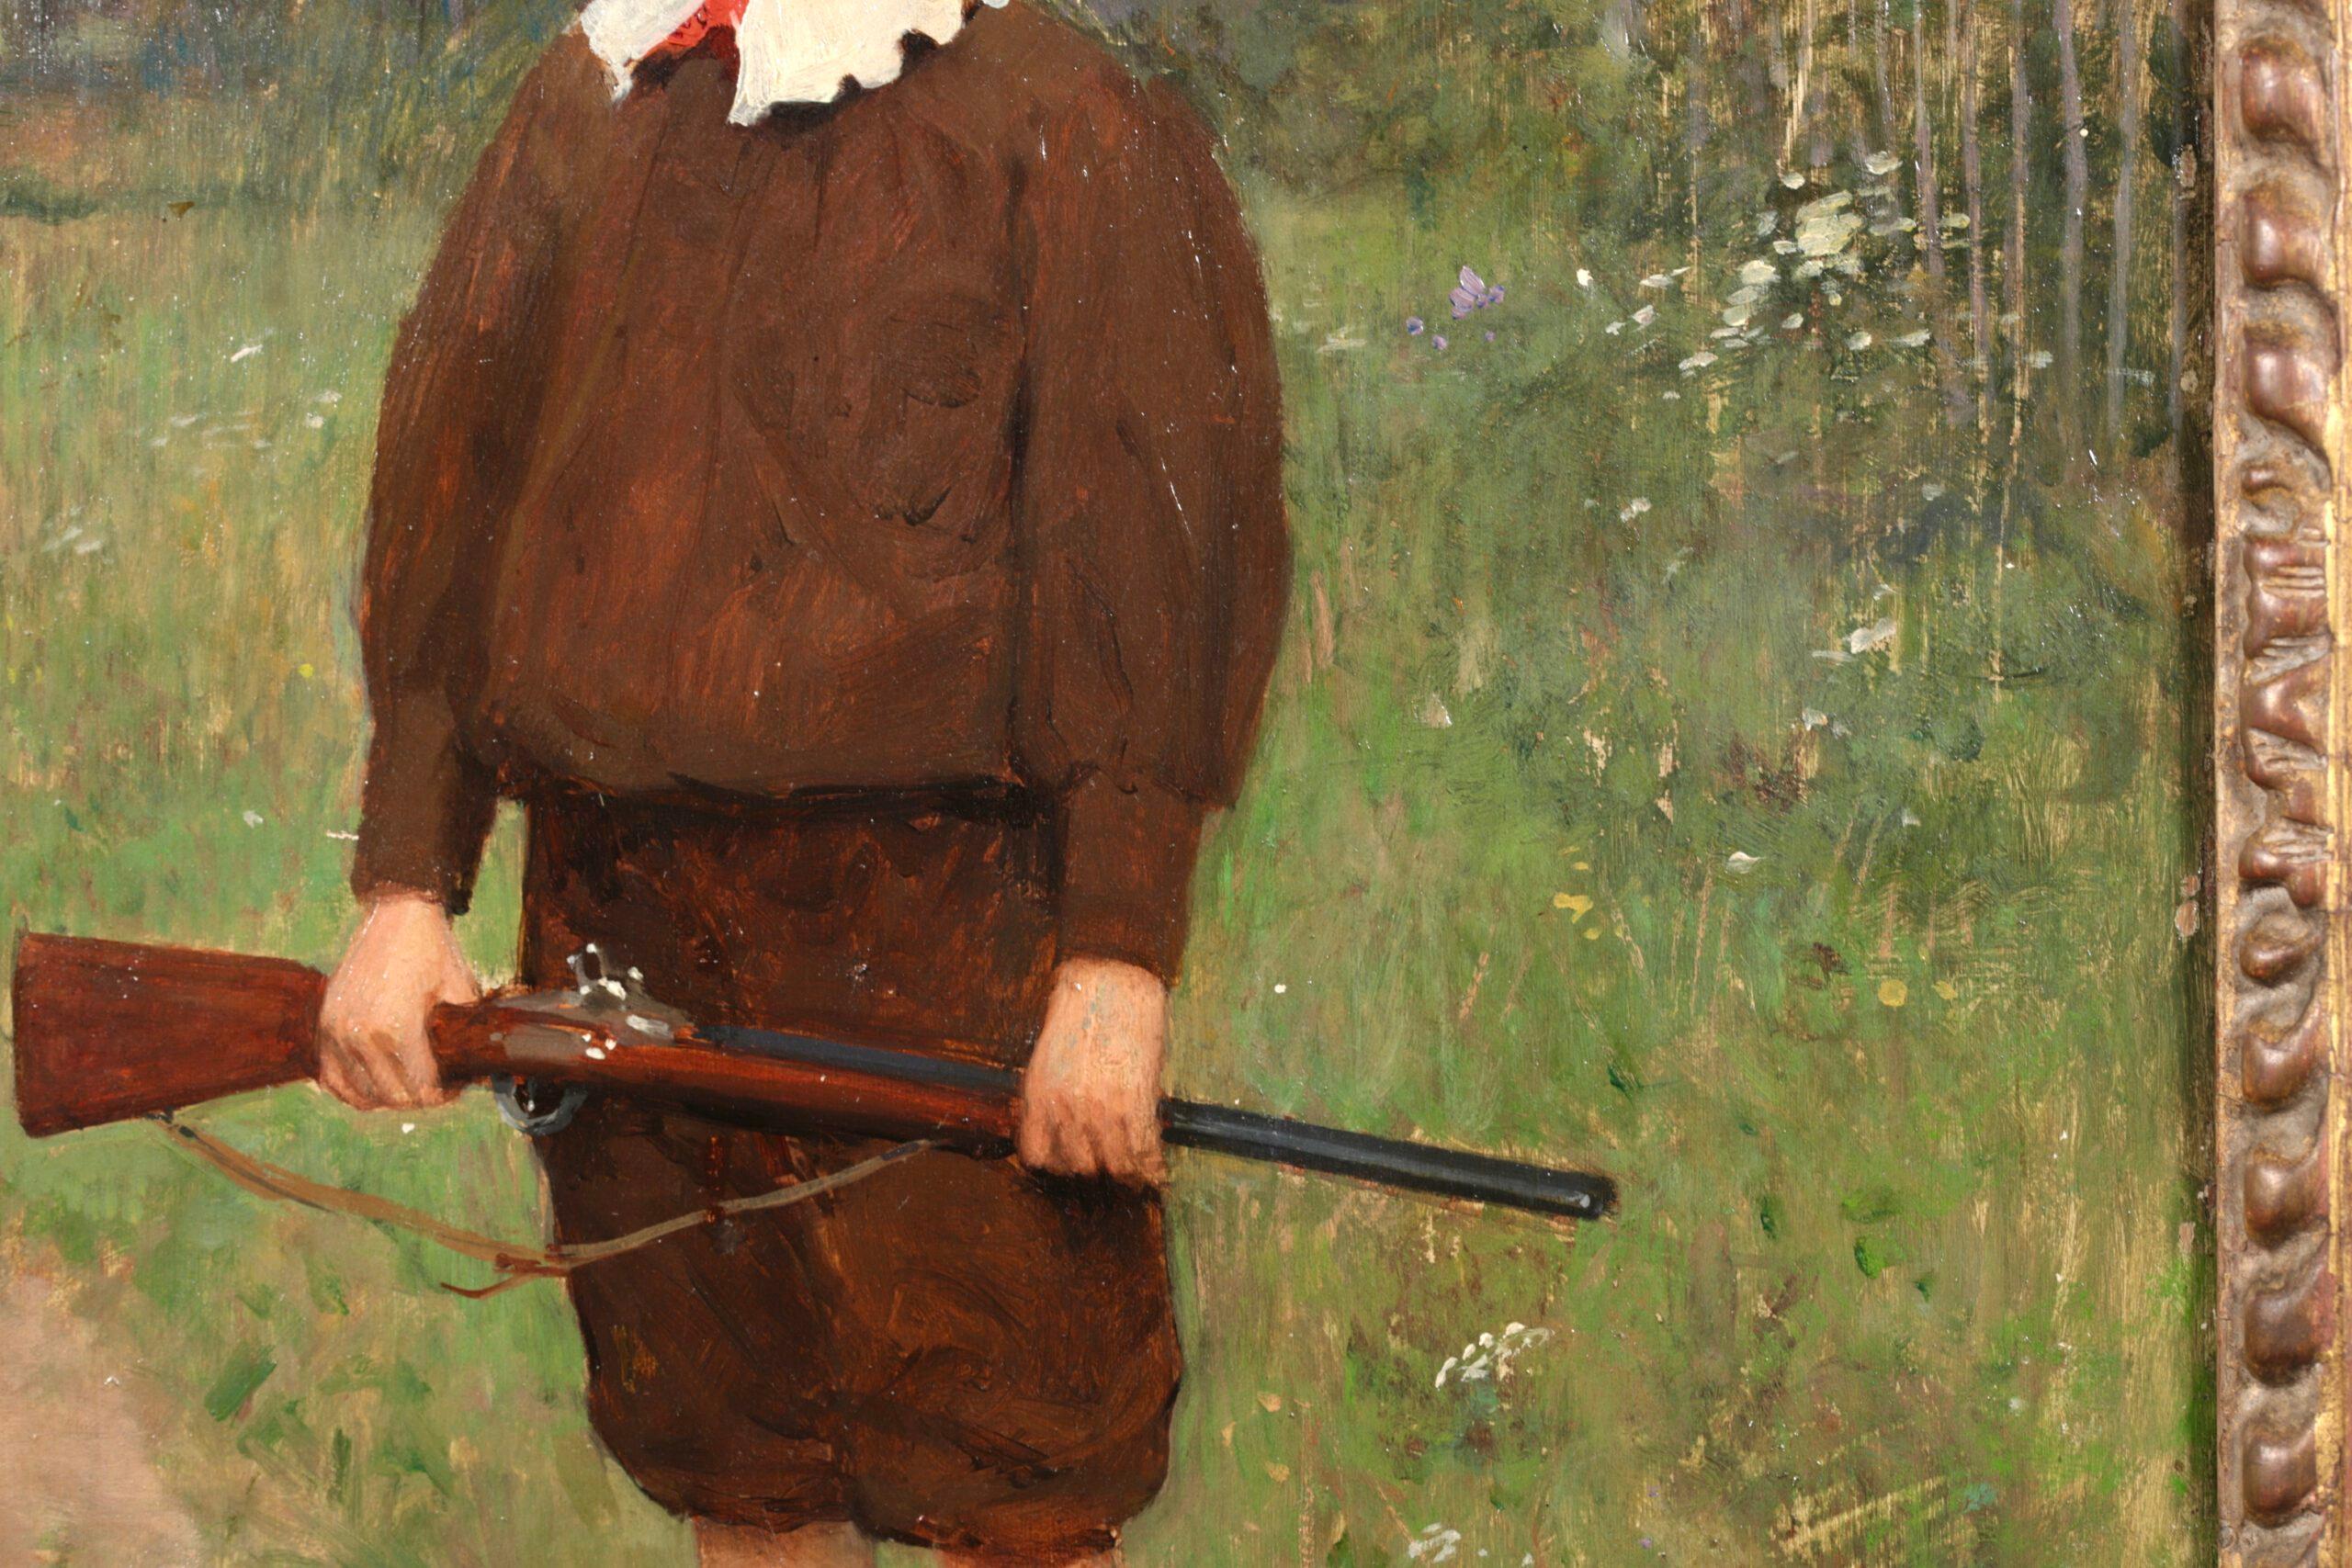 Signiertes Porträt in Öl auf Platte des französischen Realisten Victor Gabriel Gilbert. Das Werk zeigt einen jungen Jäger in brauner Kleidung mit geschnürten Lederstiefeln, der auf einem Weg in einer Landschaft steht und ein Gewehr in der Hand